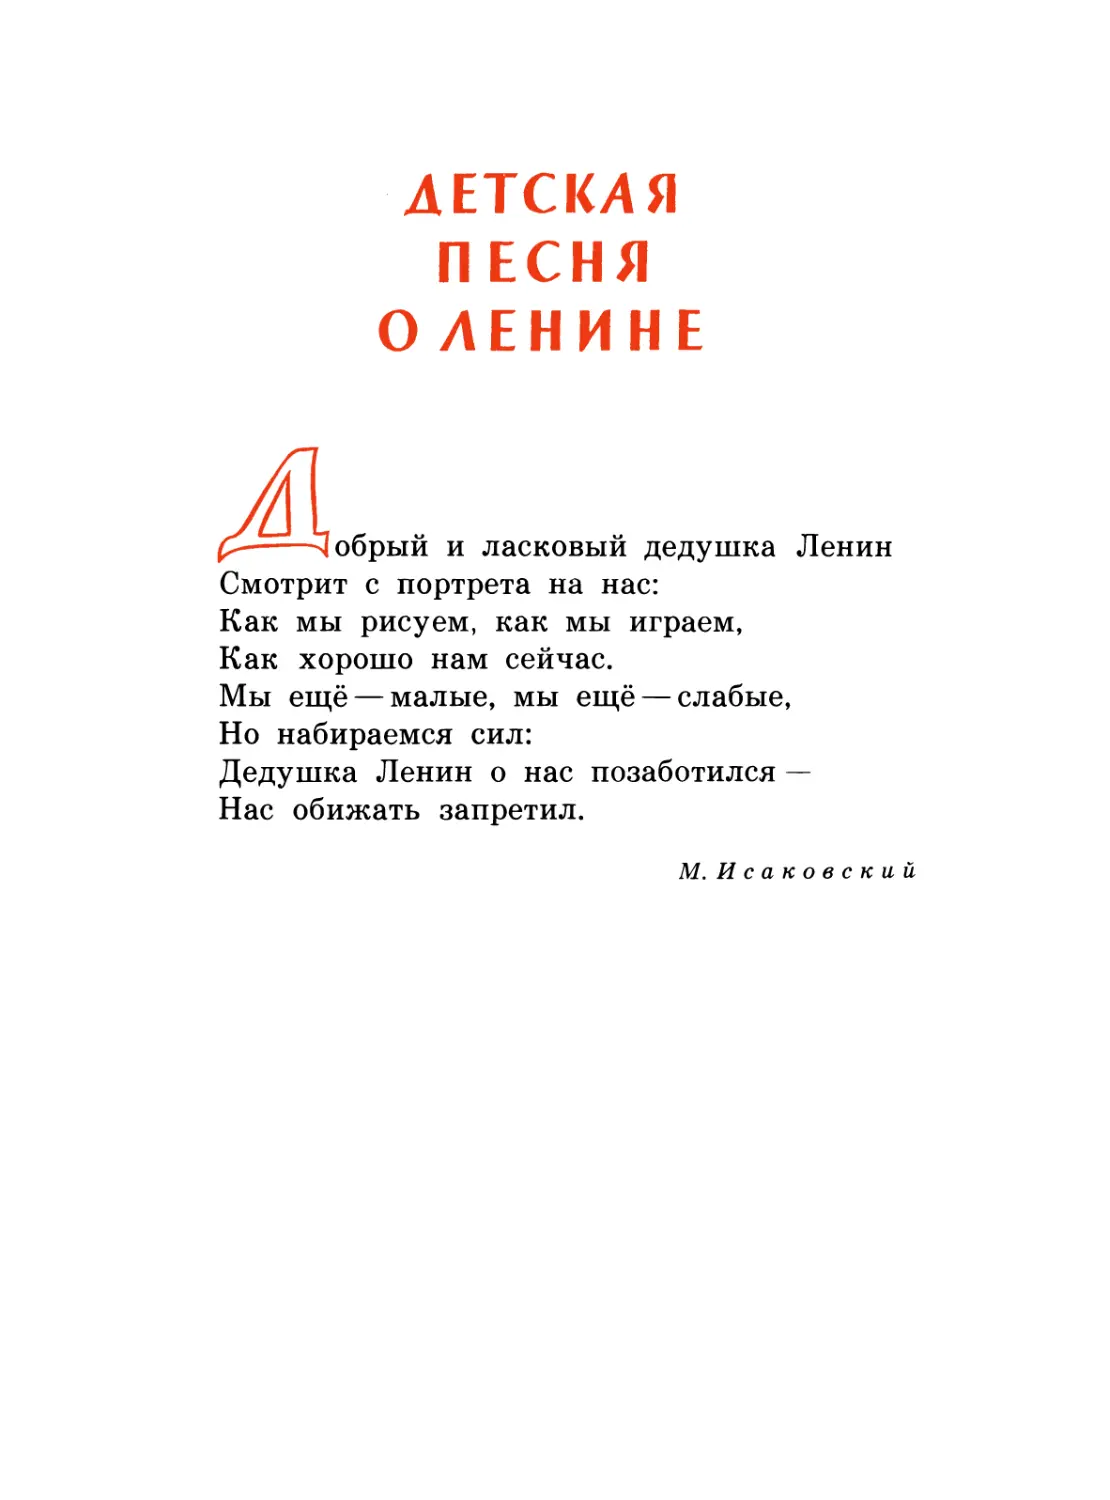 Детская песня о Ленине. М. Исаковский